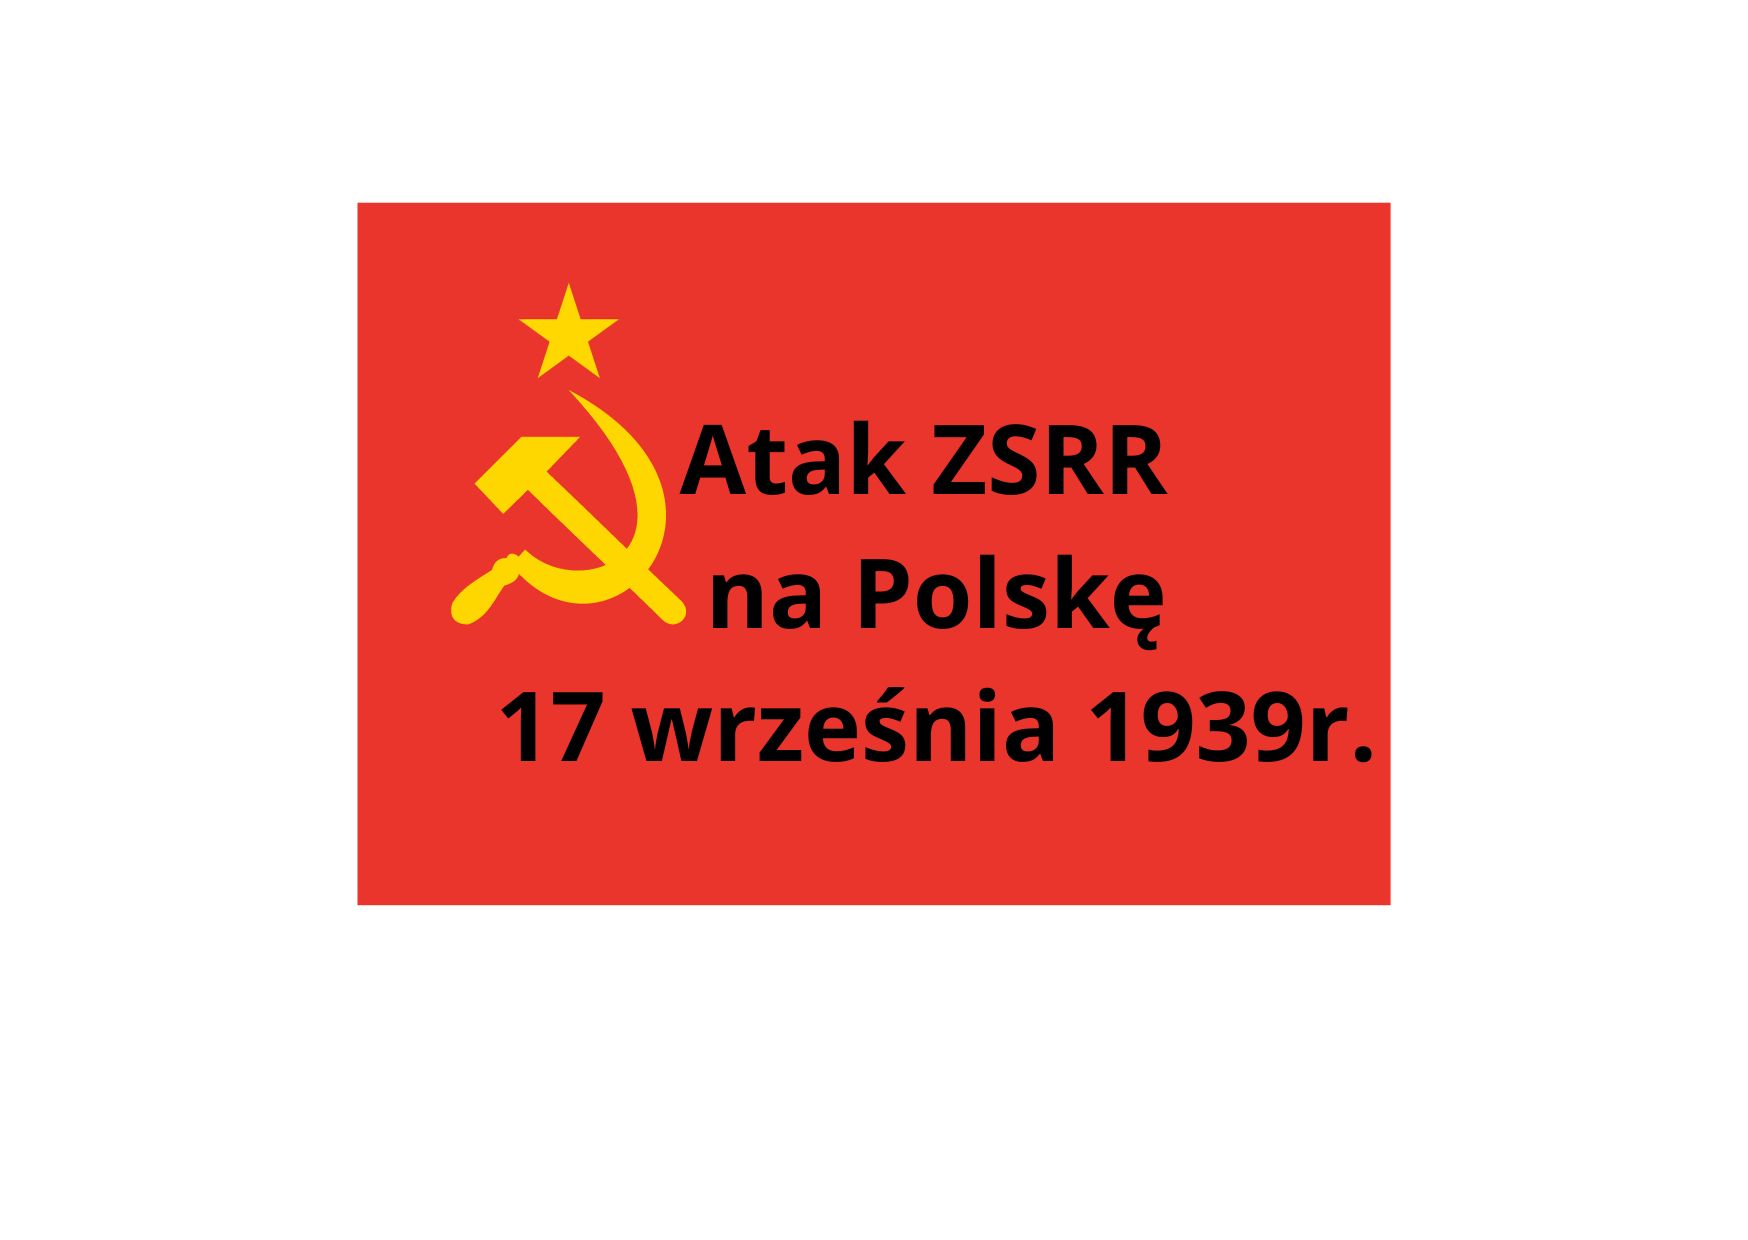 Agresja ZSRR na Polskę